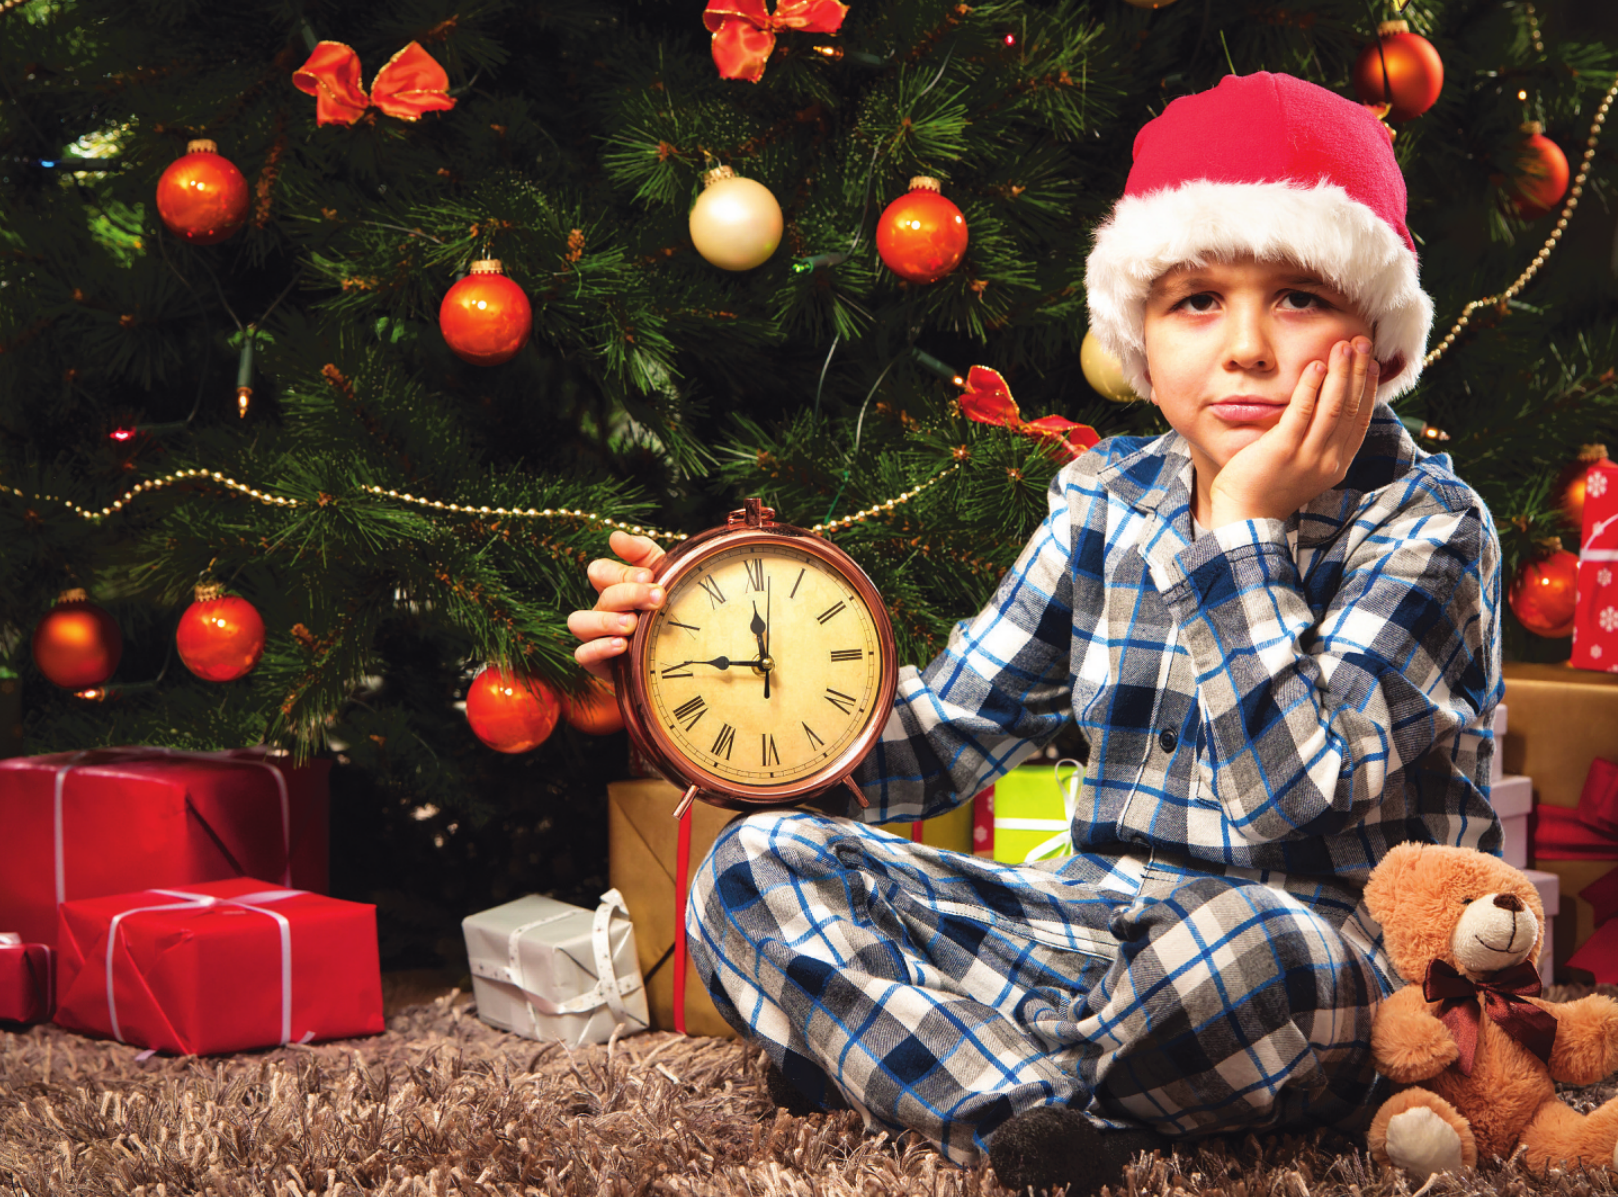 Wann kommt denn nun endlich der Weihnachtsmann? Foto:Adobe Stock/Alexander Raths